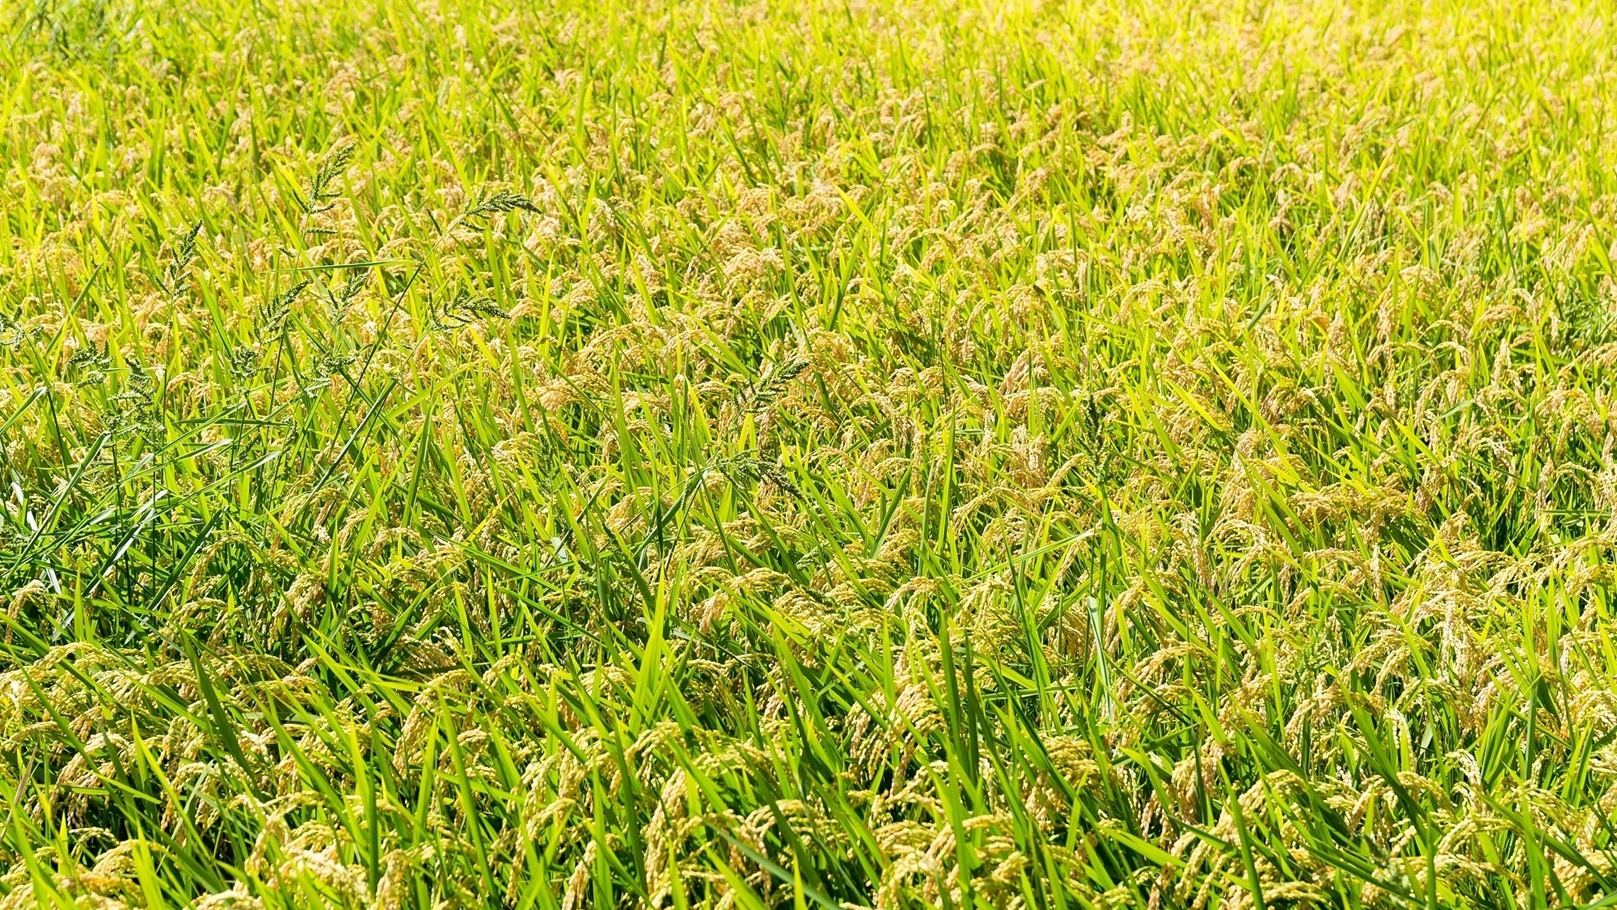 rice-plant-in-rice-field-2021-08-29-06-52-49-utc